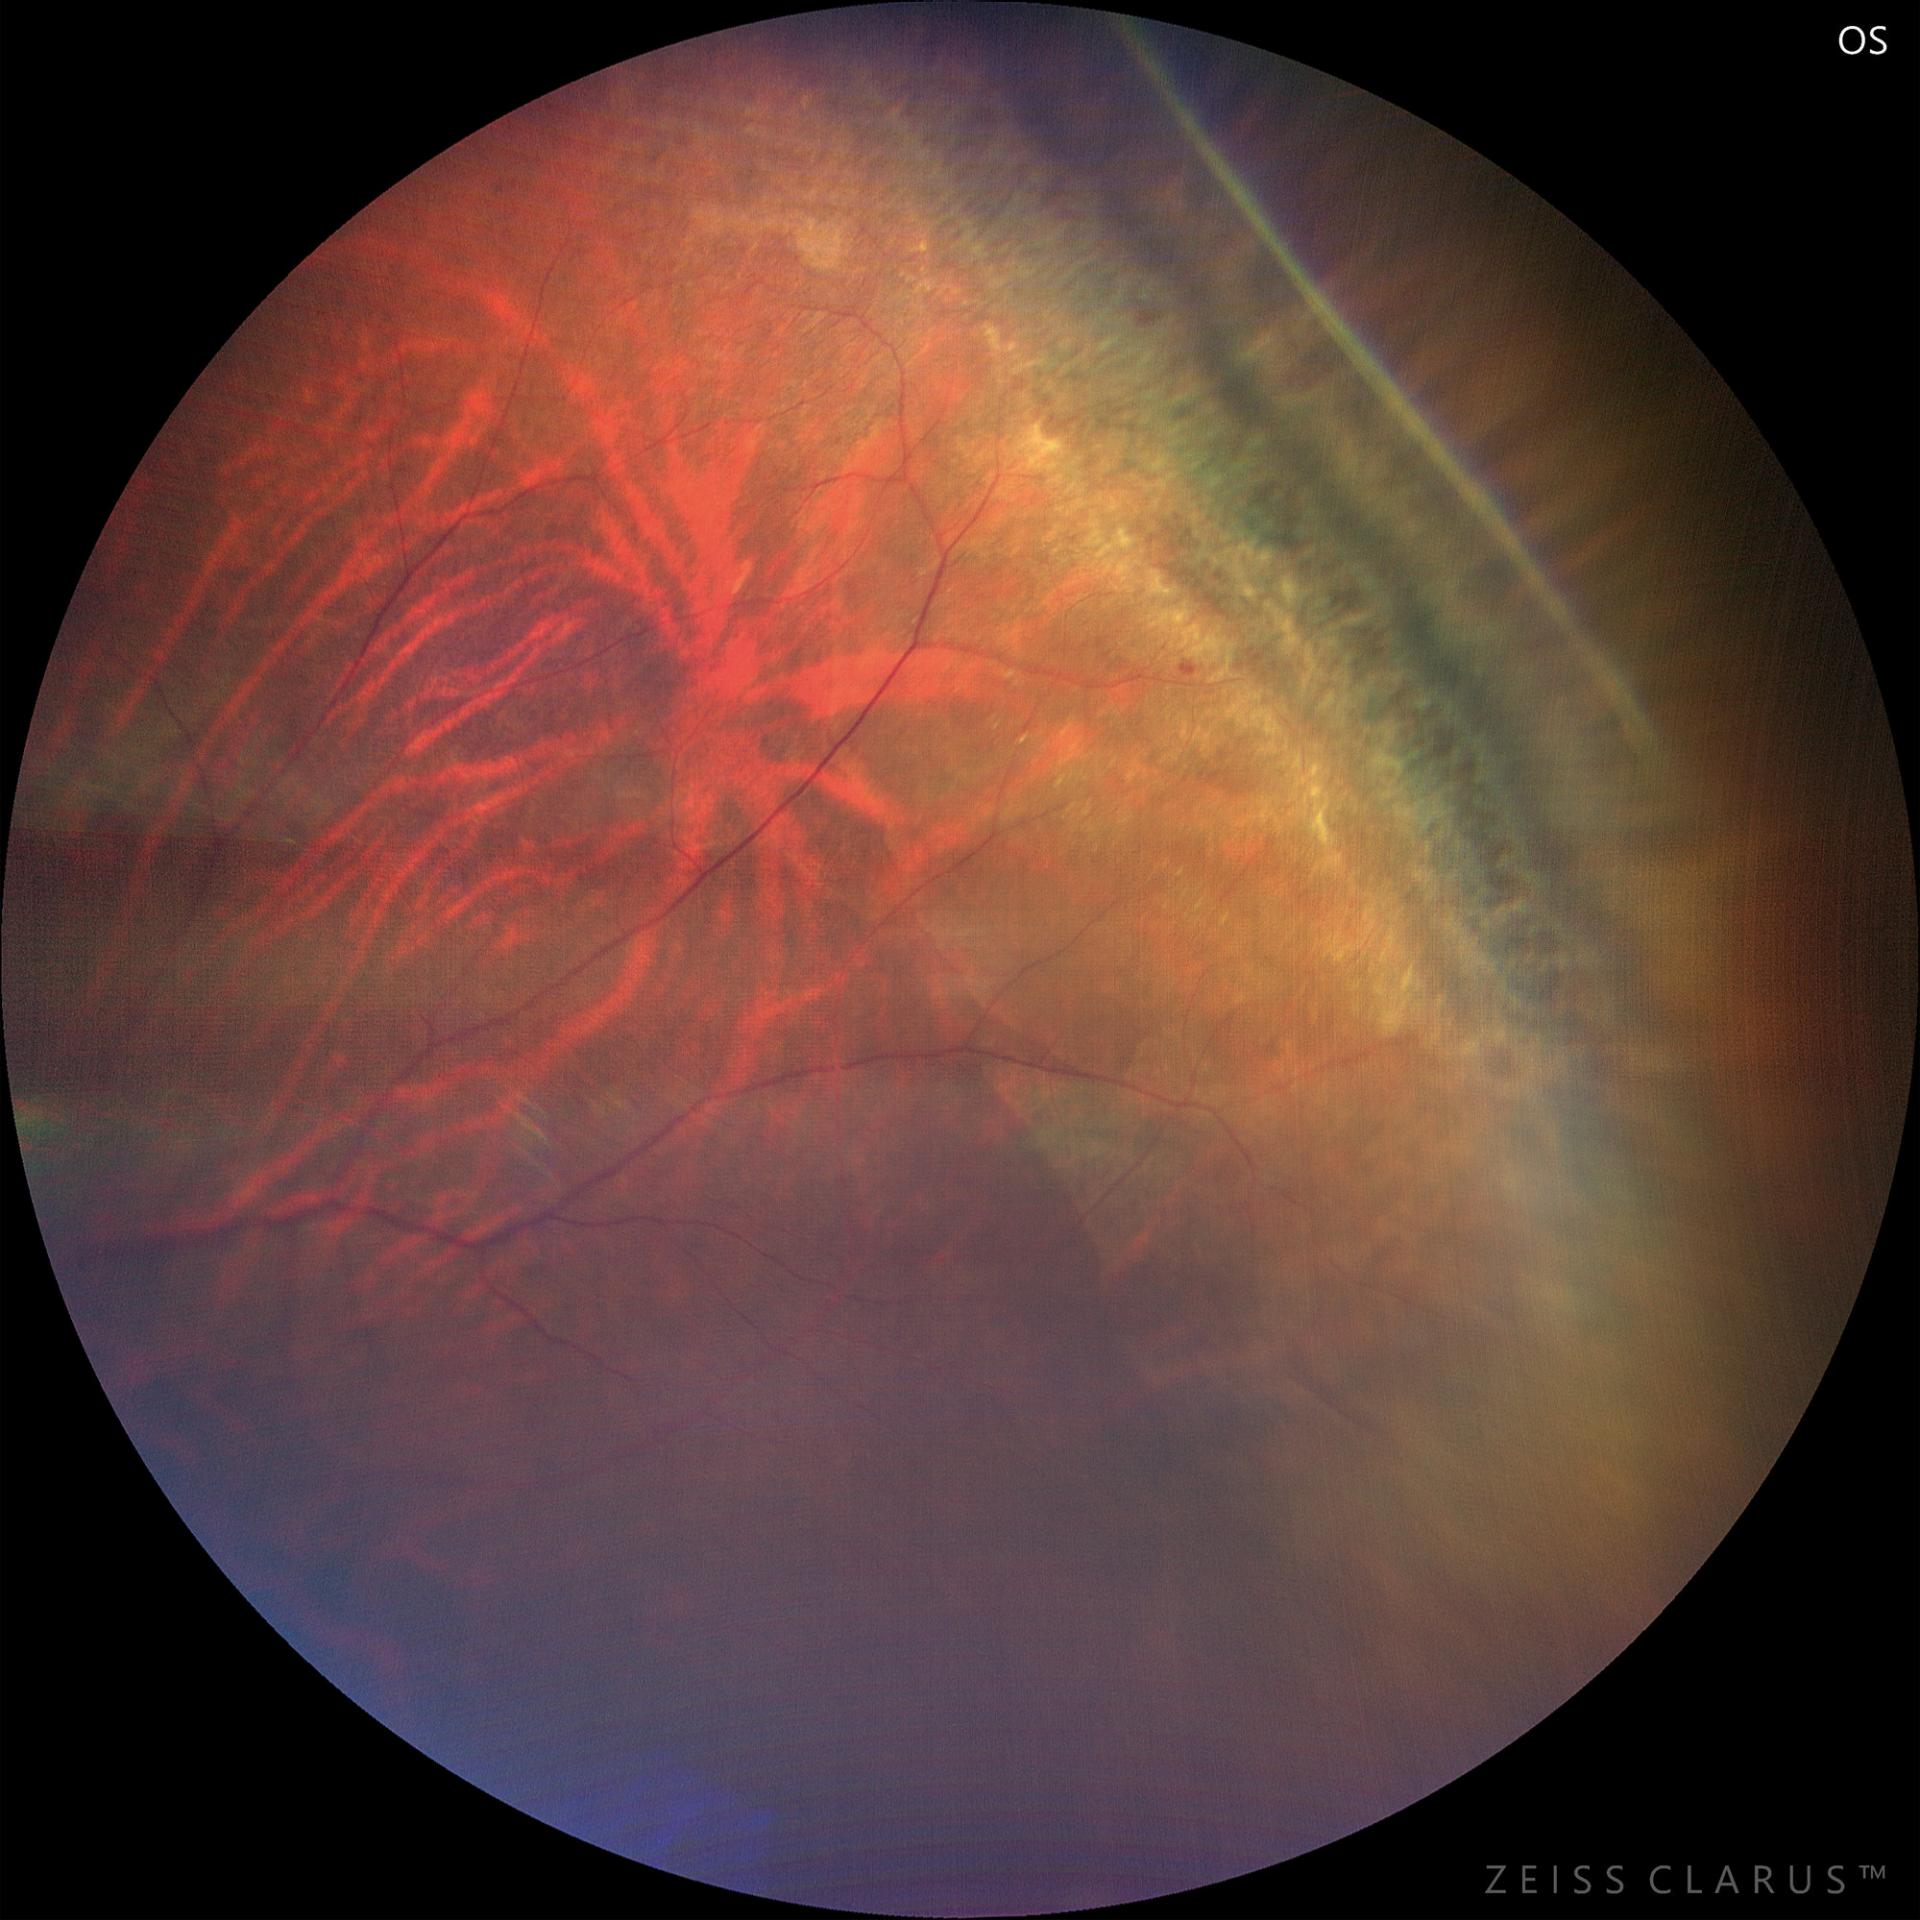 Retinal lattice degeneration